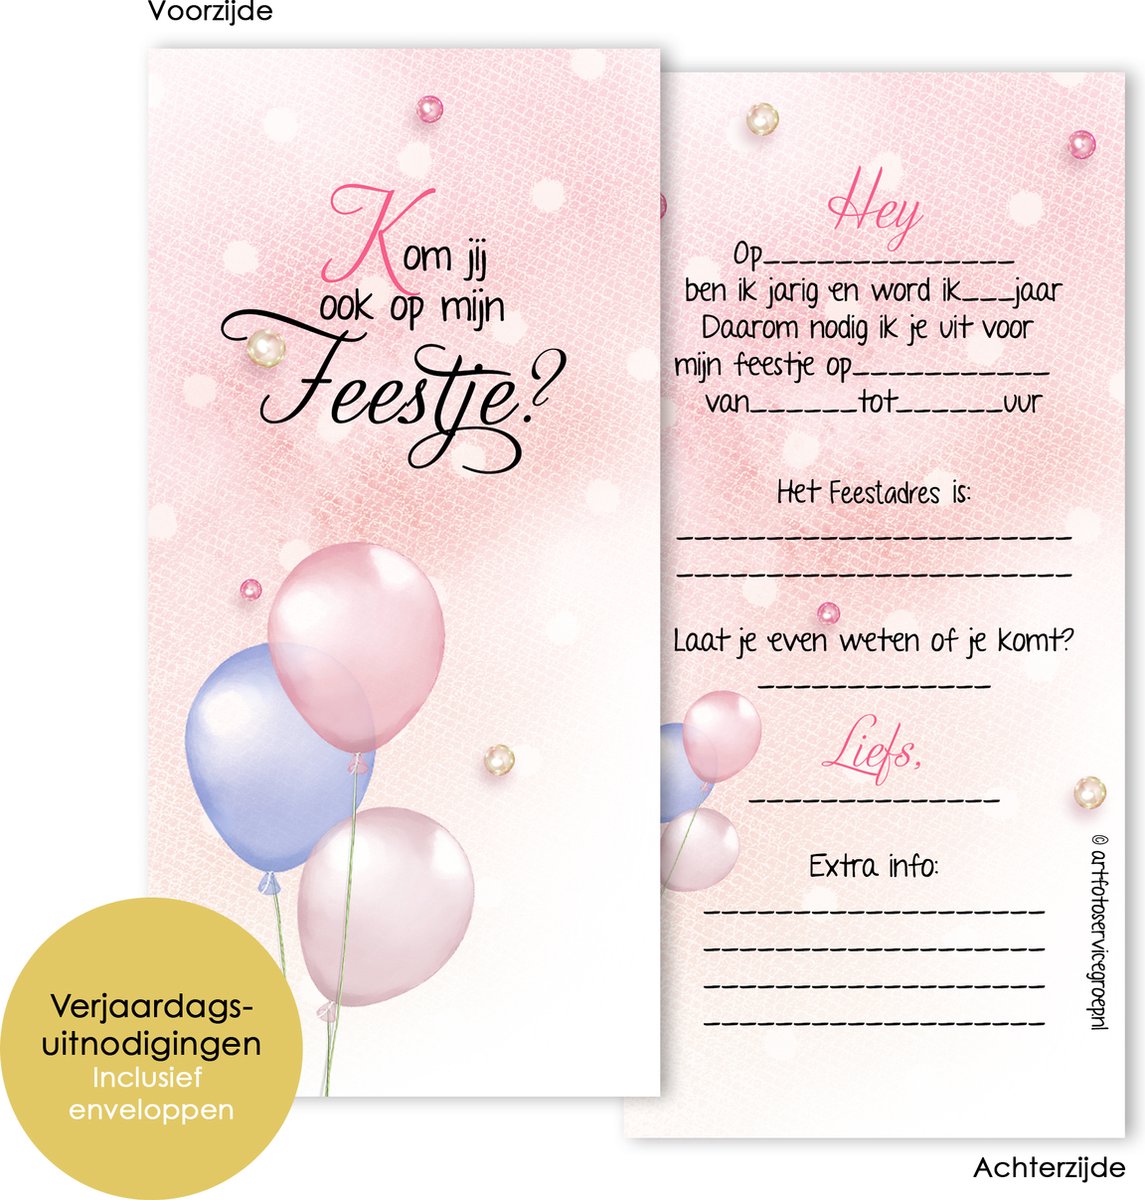 Cartons d'invitation pour anniversaire - Enfant - Ballons - 8